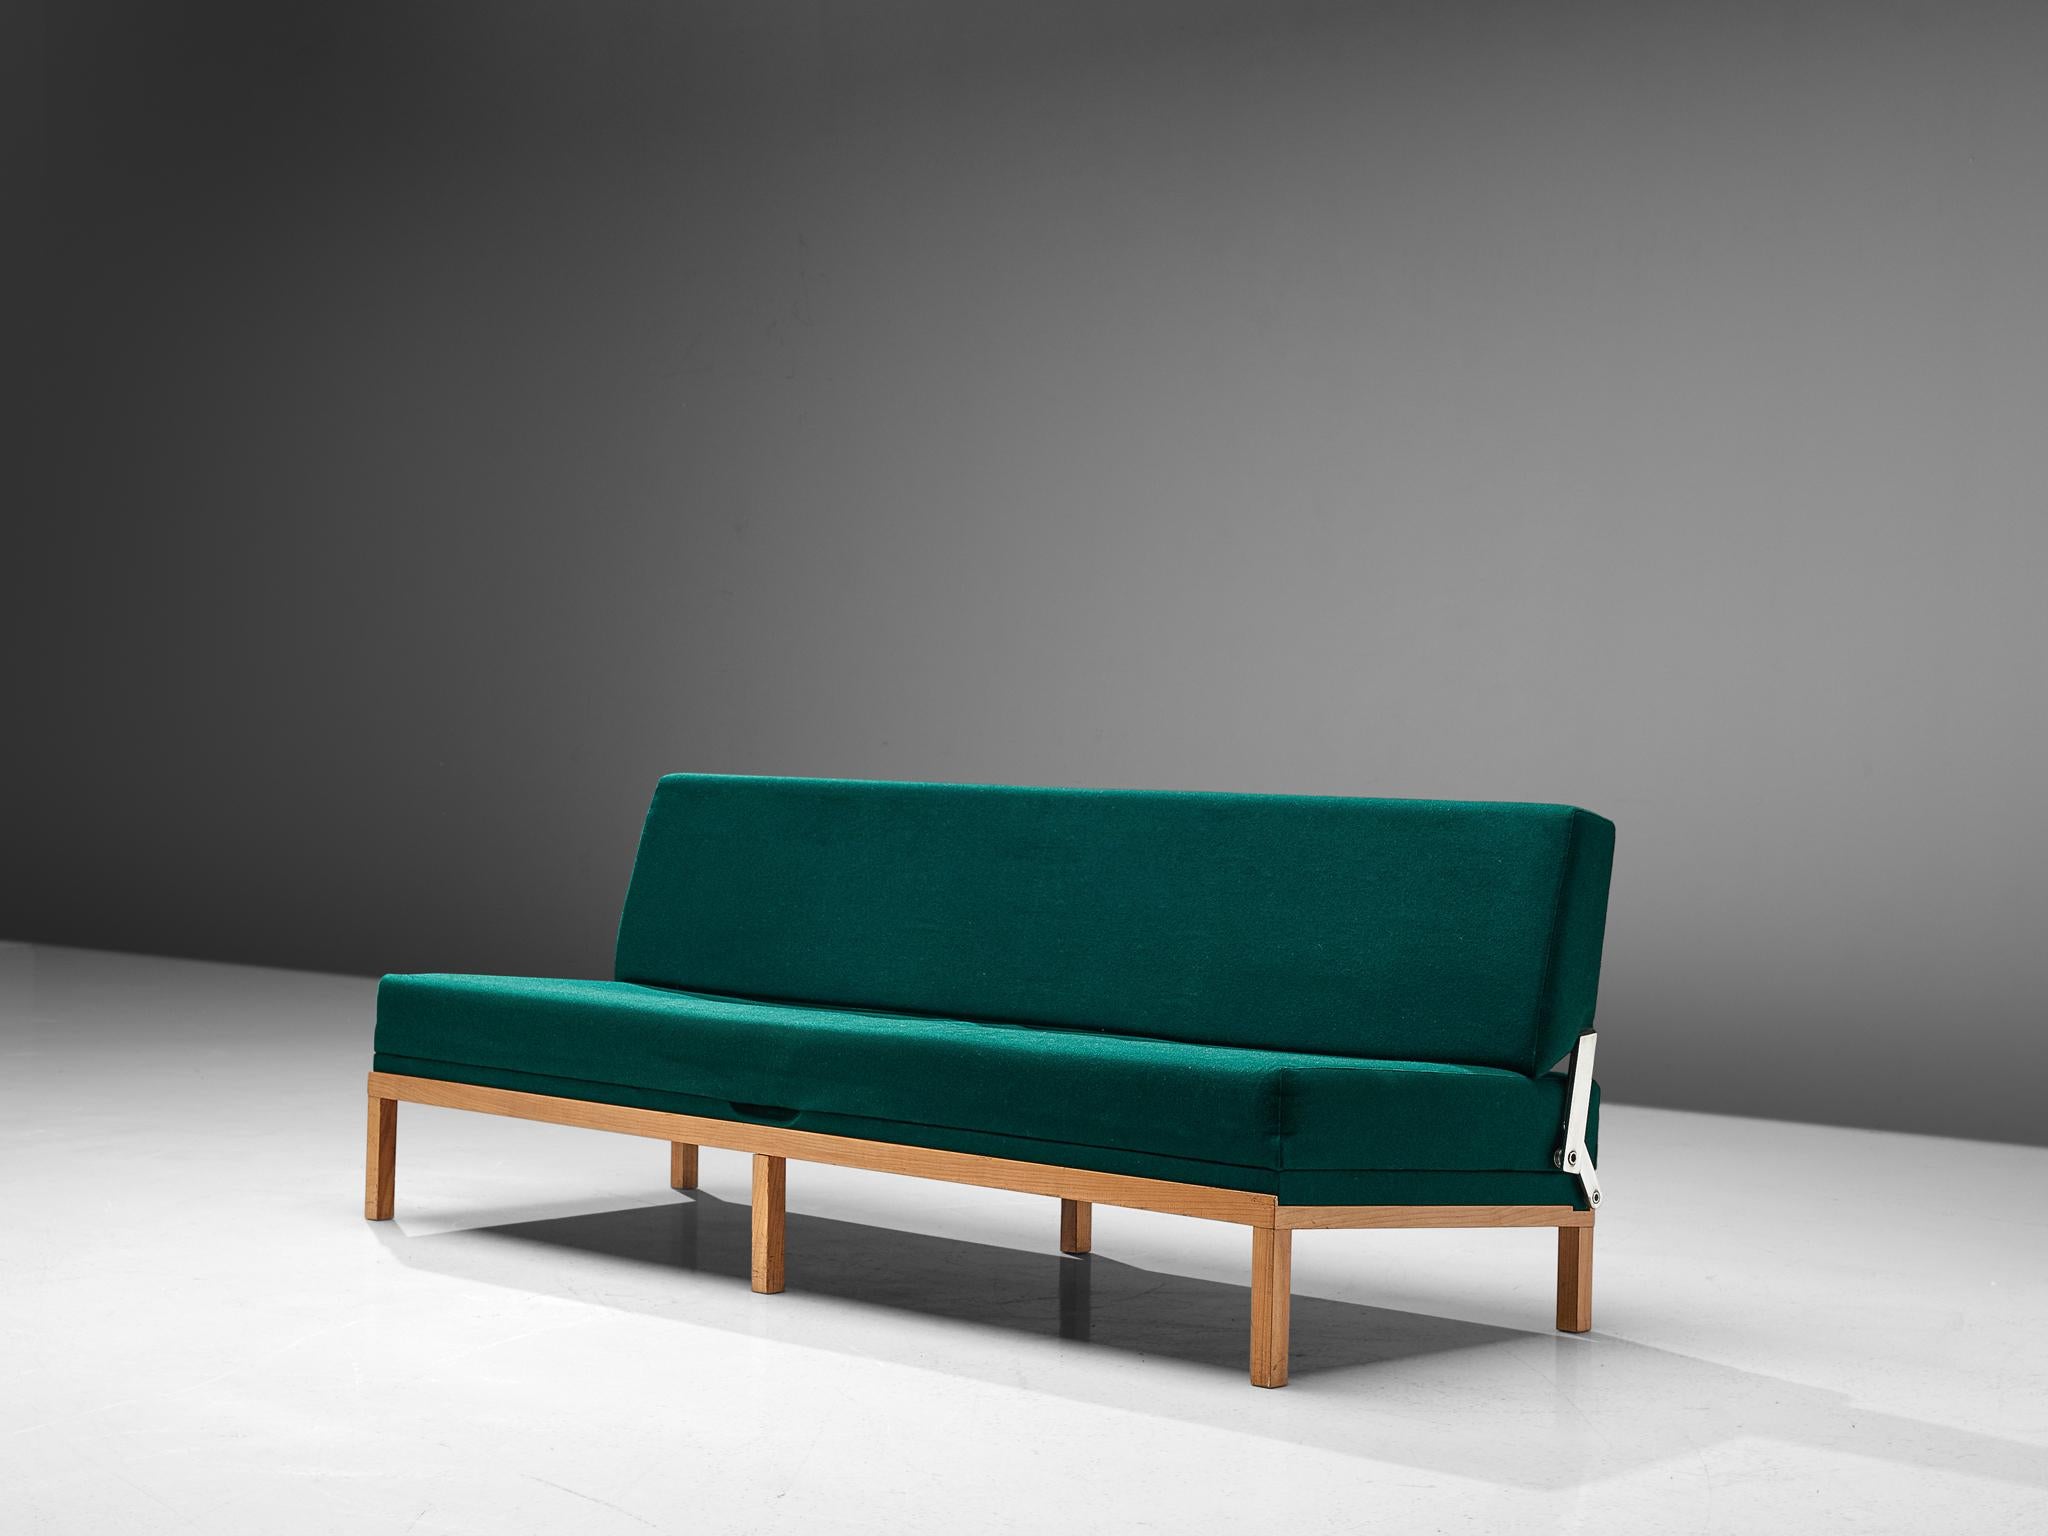 Johannes Spalt für Wittmann, grüner Stoff, Teakholz, Österreich, 1960er Jahre.

Ein wunderschönes Sofa, das sich in ein Daybed verwandeln lässt, entworfen von Johannes Spalt für Wittman in den 1960er Jahren. Diese Liege trägt den Namen 